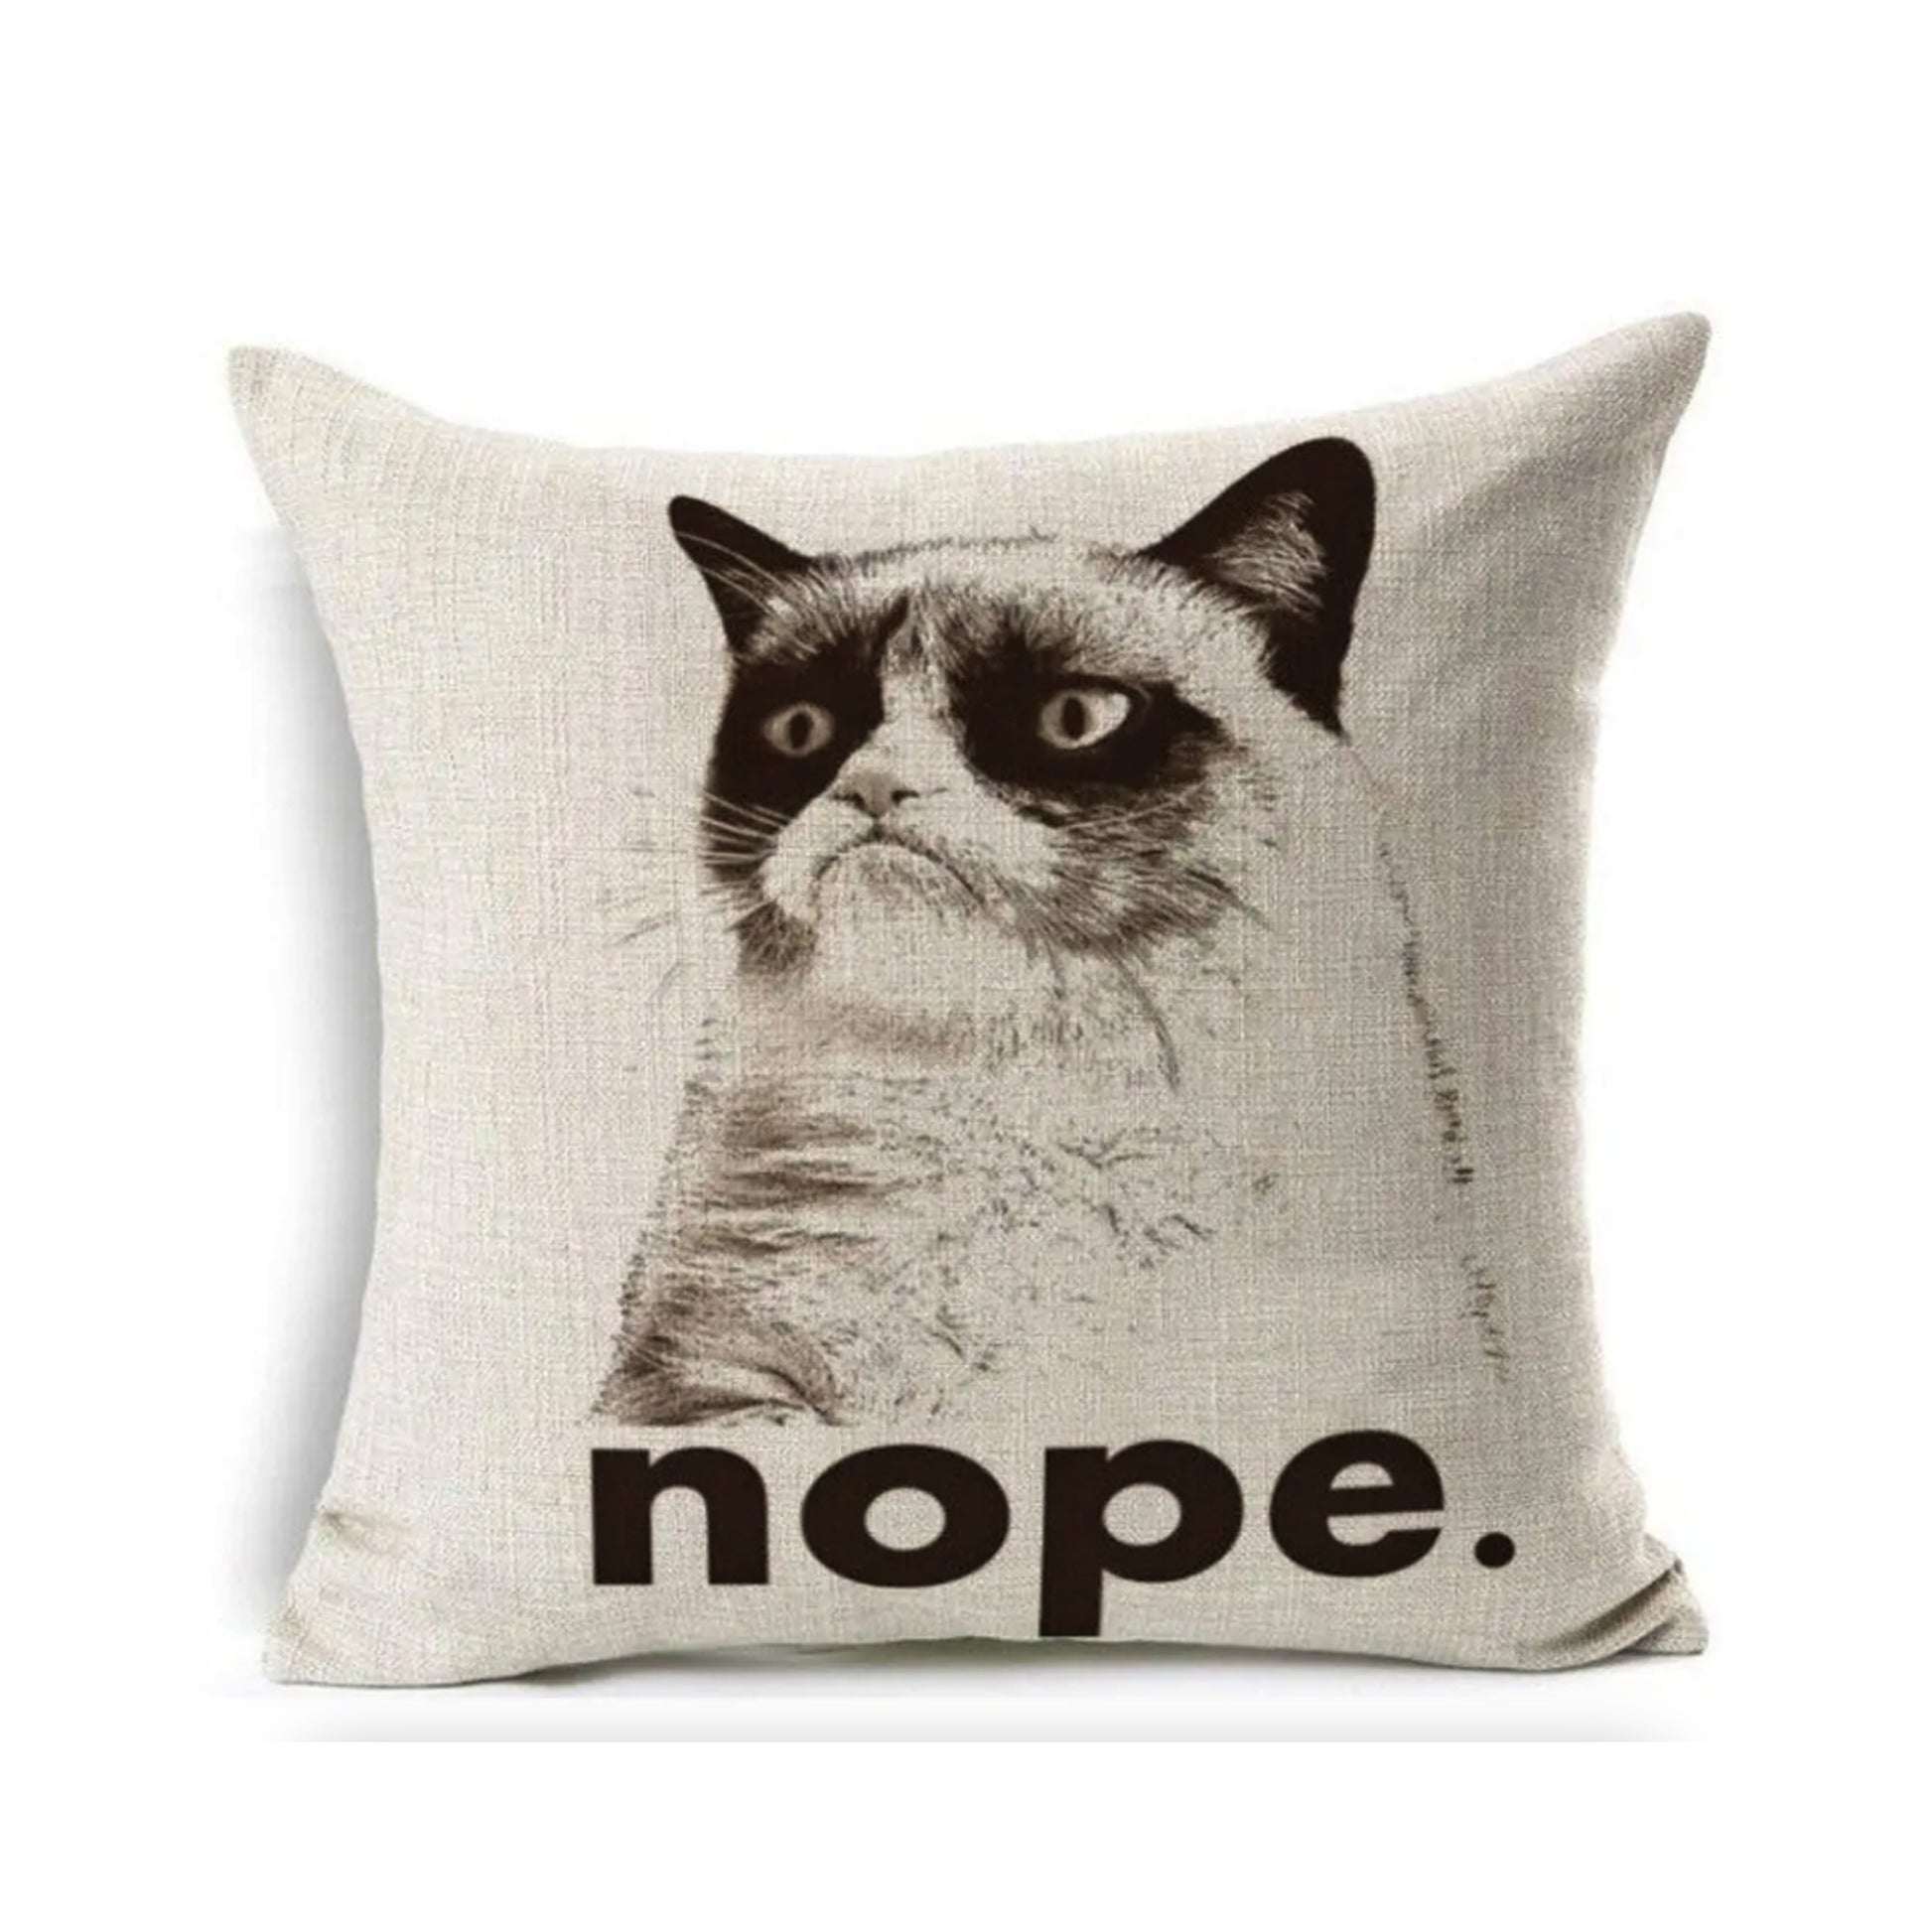 Grumpy Cat Nope Throw Pillow